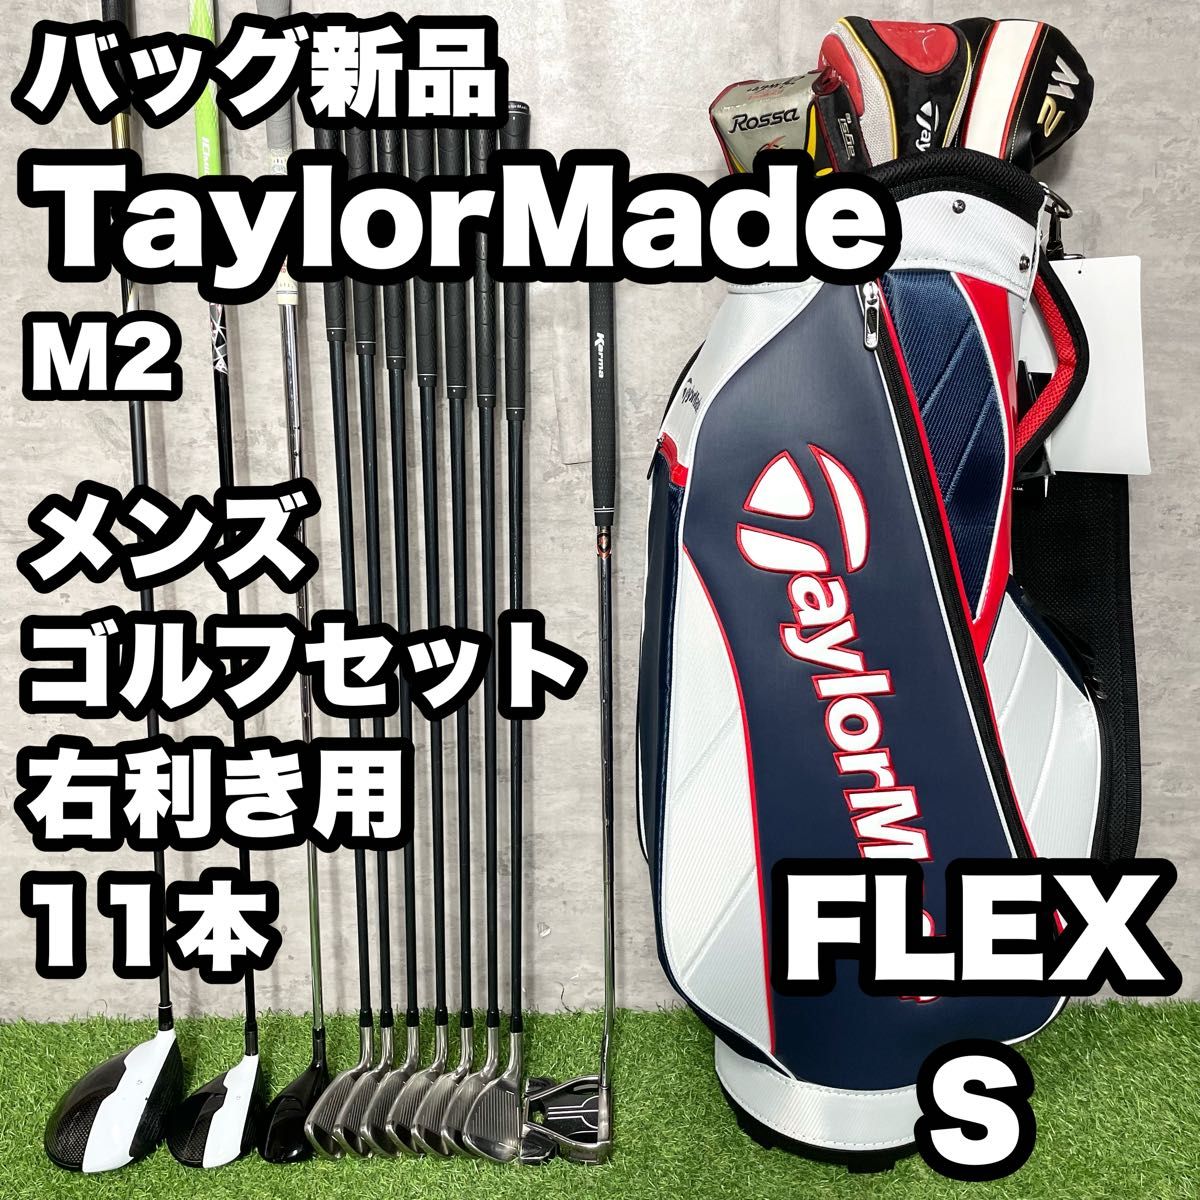 【バッグ新品】TaylorMade テーラーメイド M2 ゴルフクラブセット メンズ S 11本 右